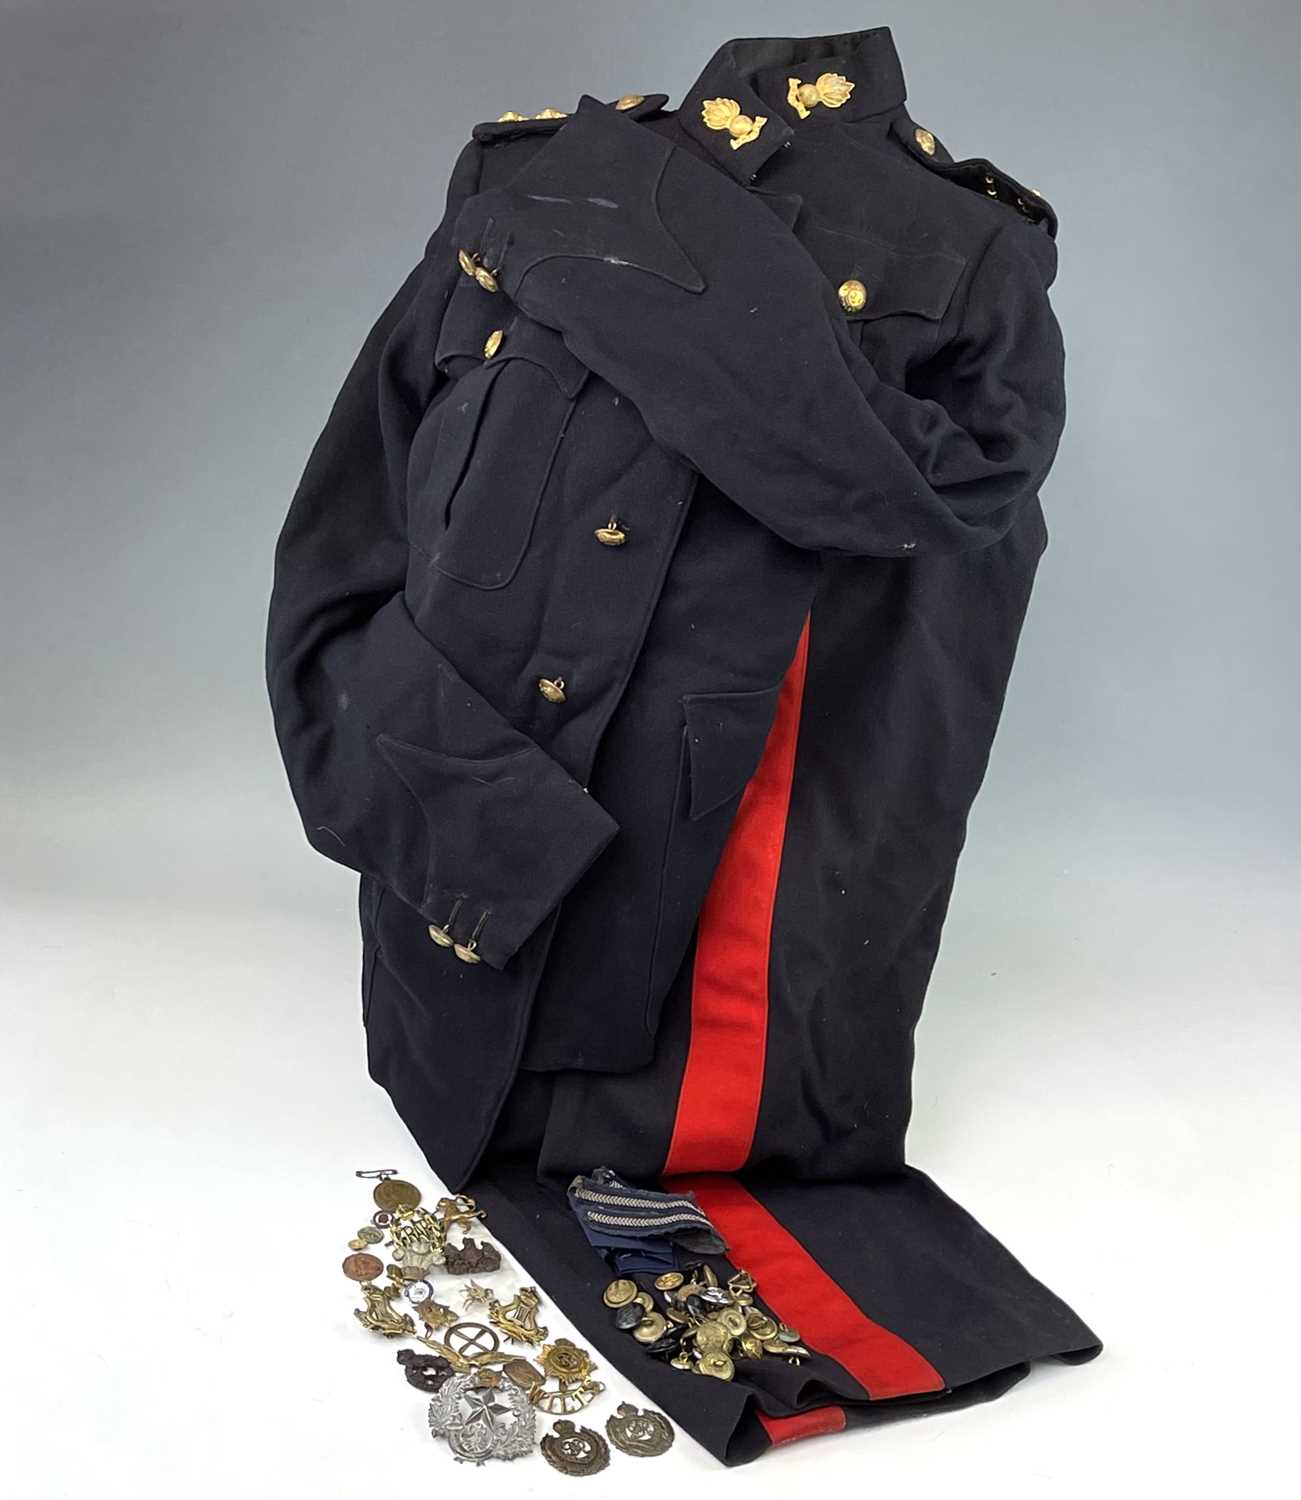 Lot 193 - Military cap badges, uniform buttons of...